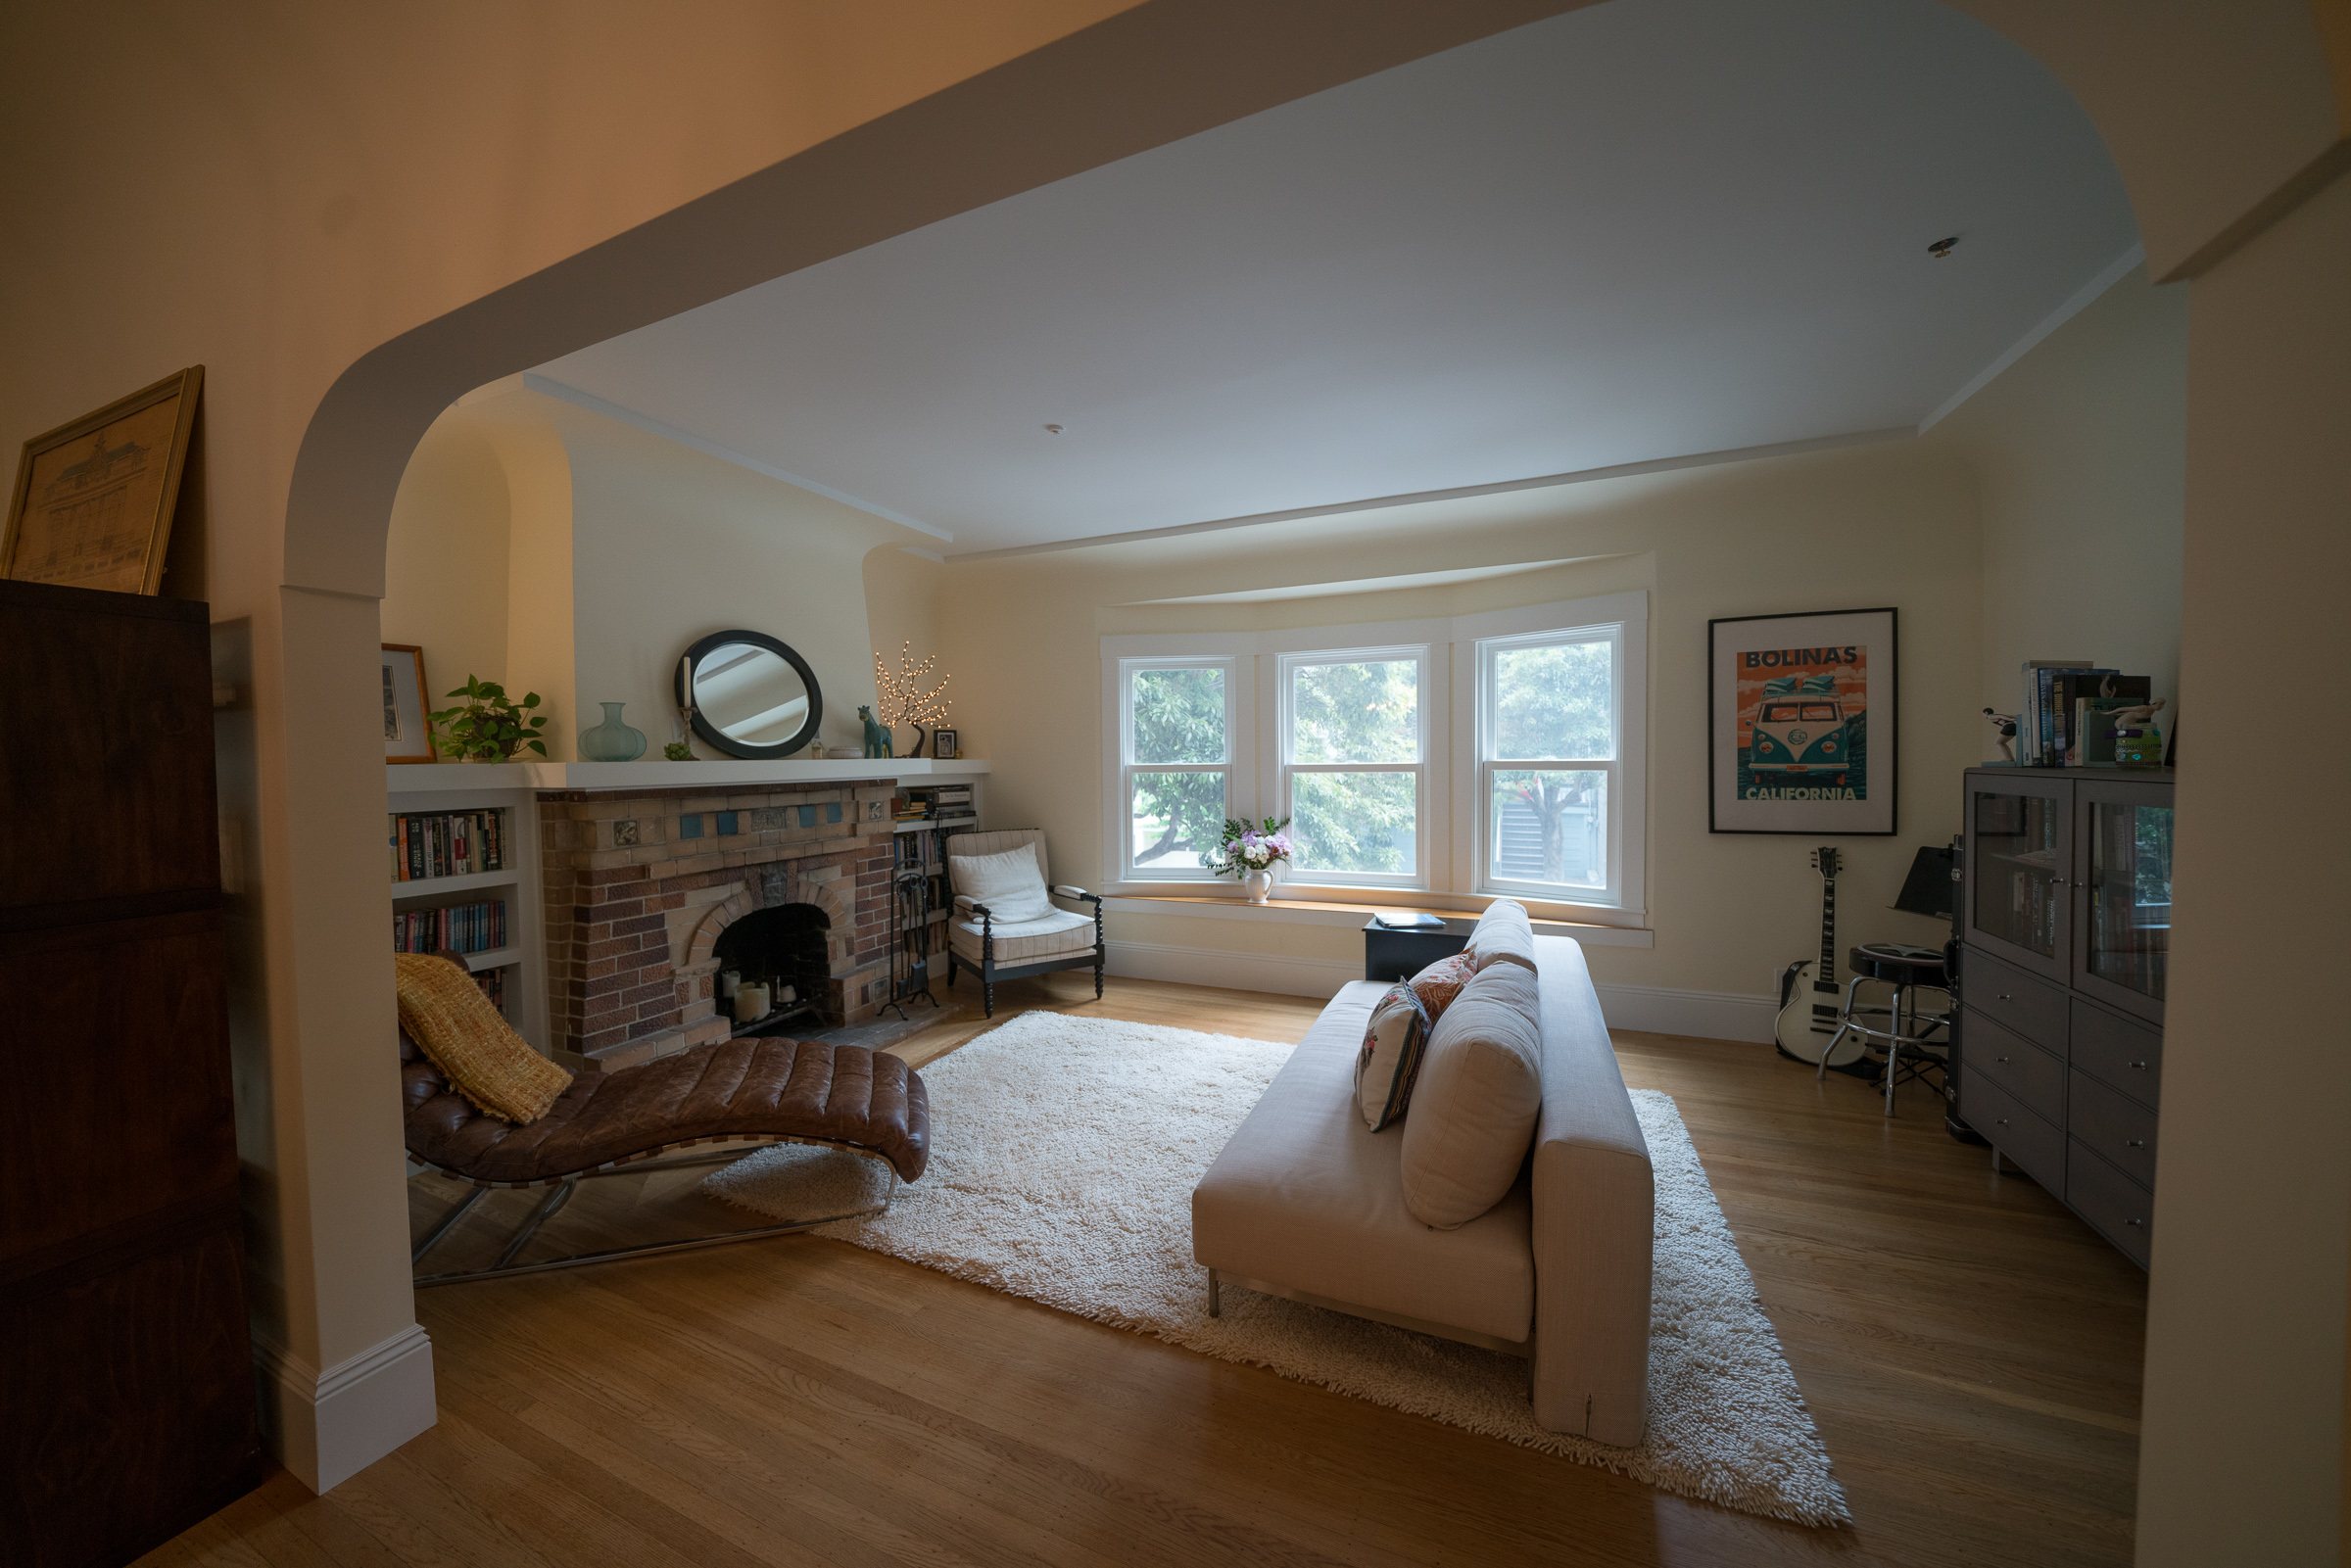 San Francisco craftsman home updates, Outerlands Design